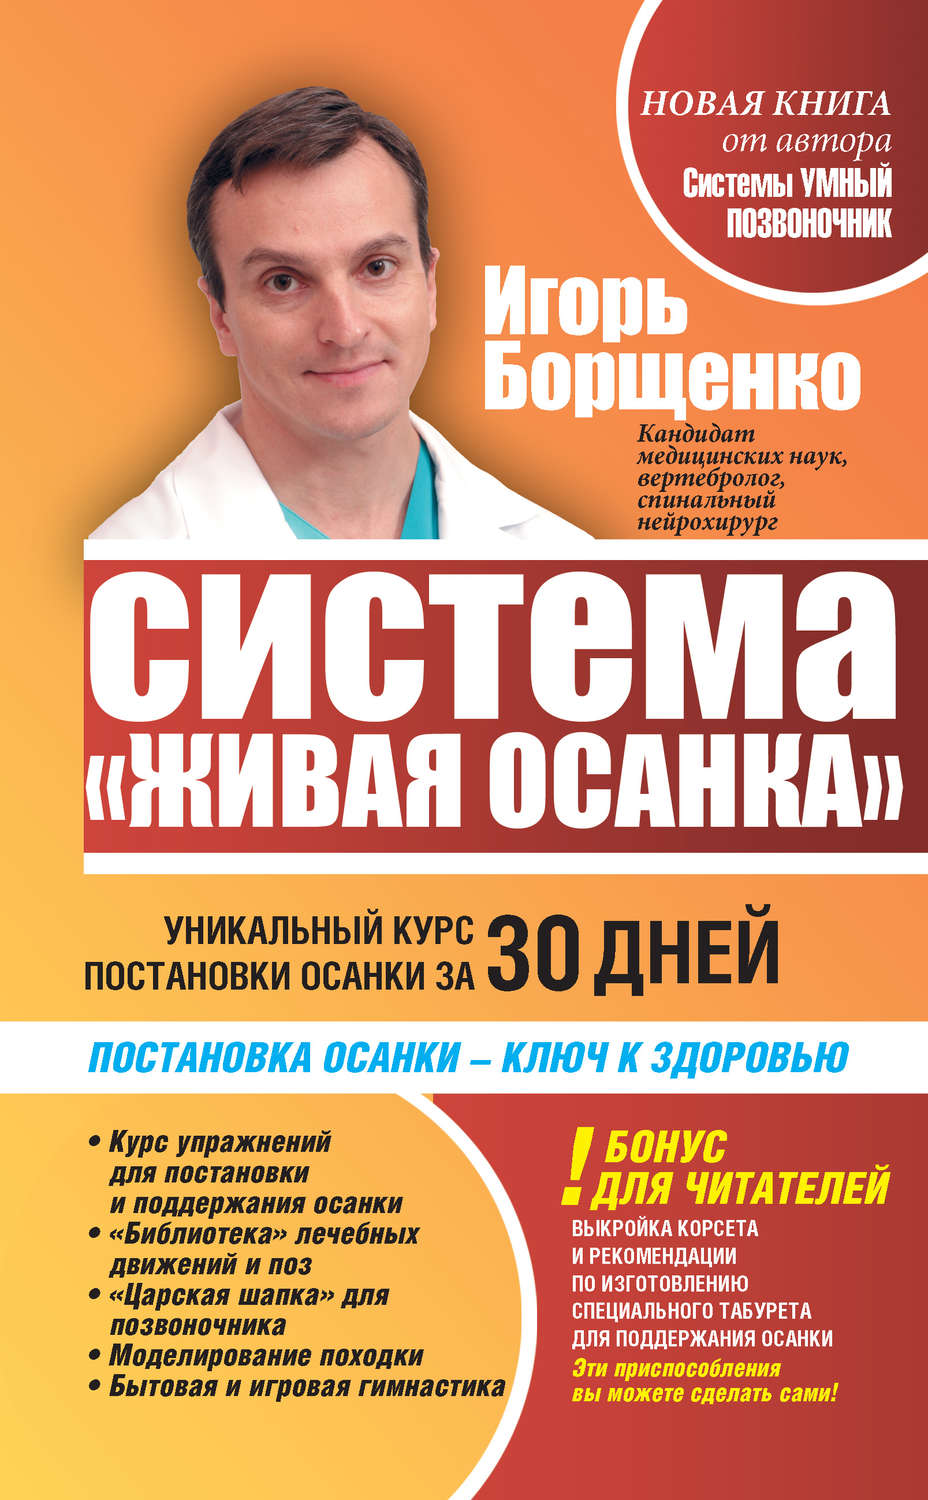 Борщенко игорь анатольевич книги скачать бесплатно